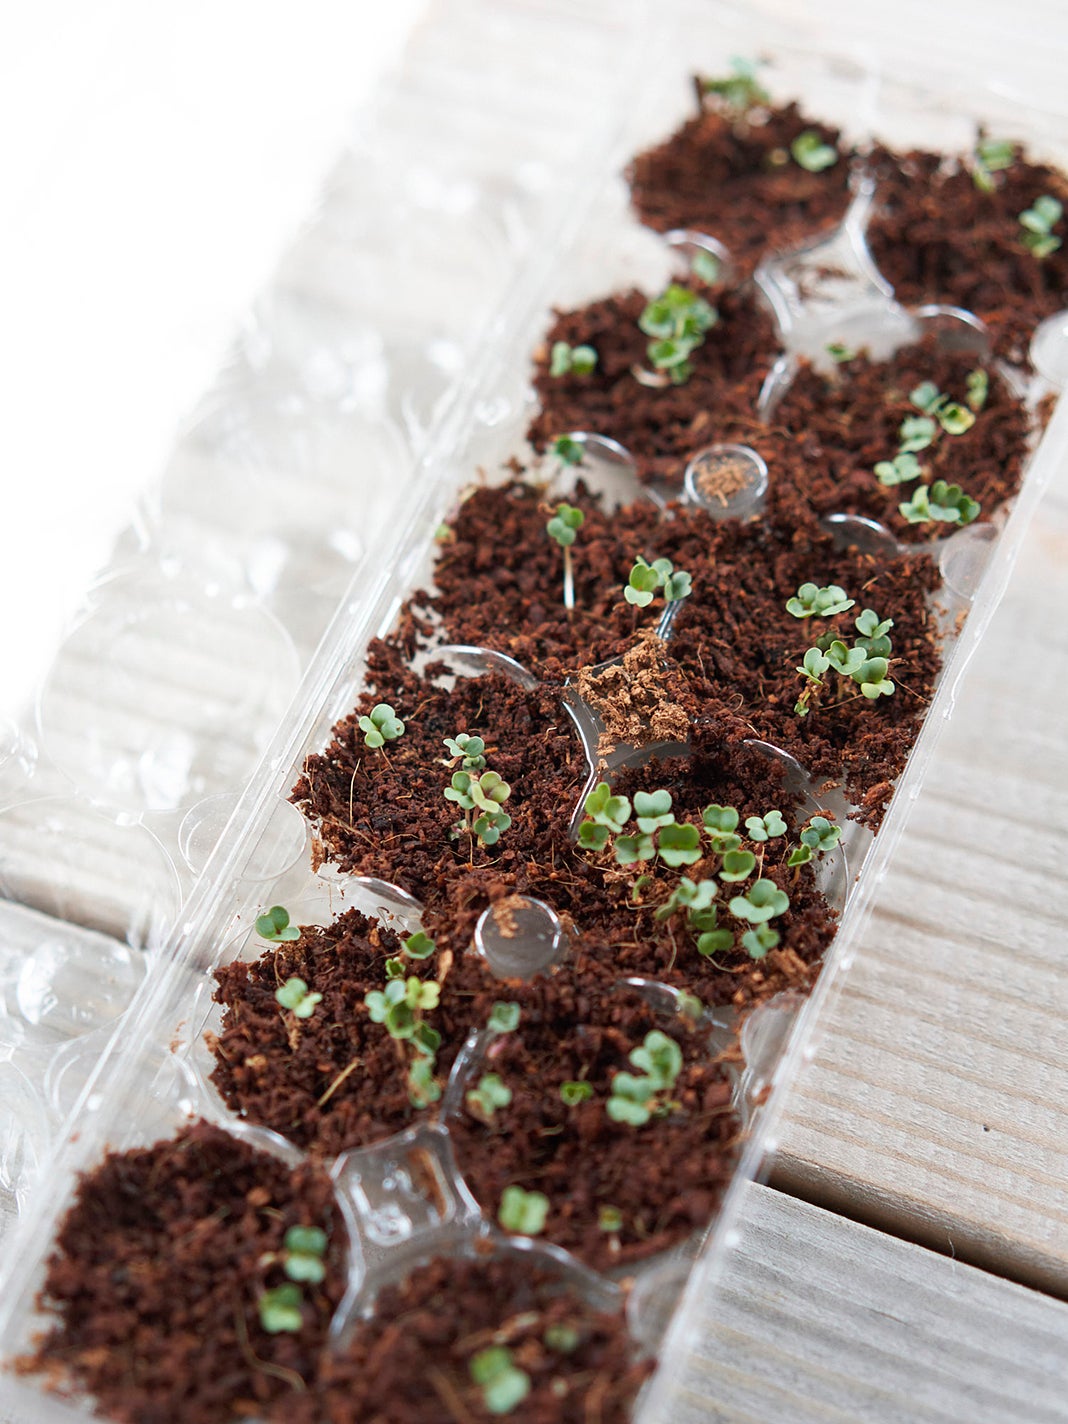 Seedlings in egg carton